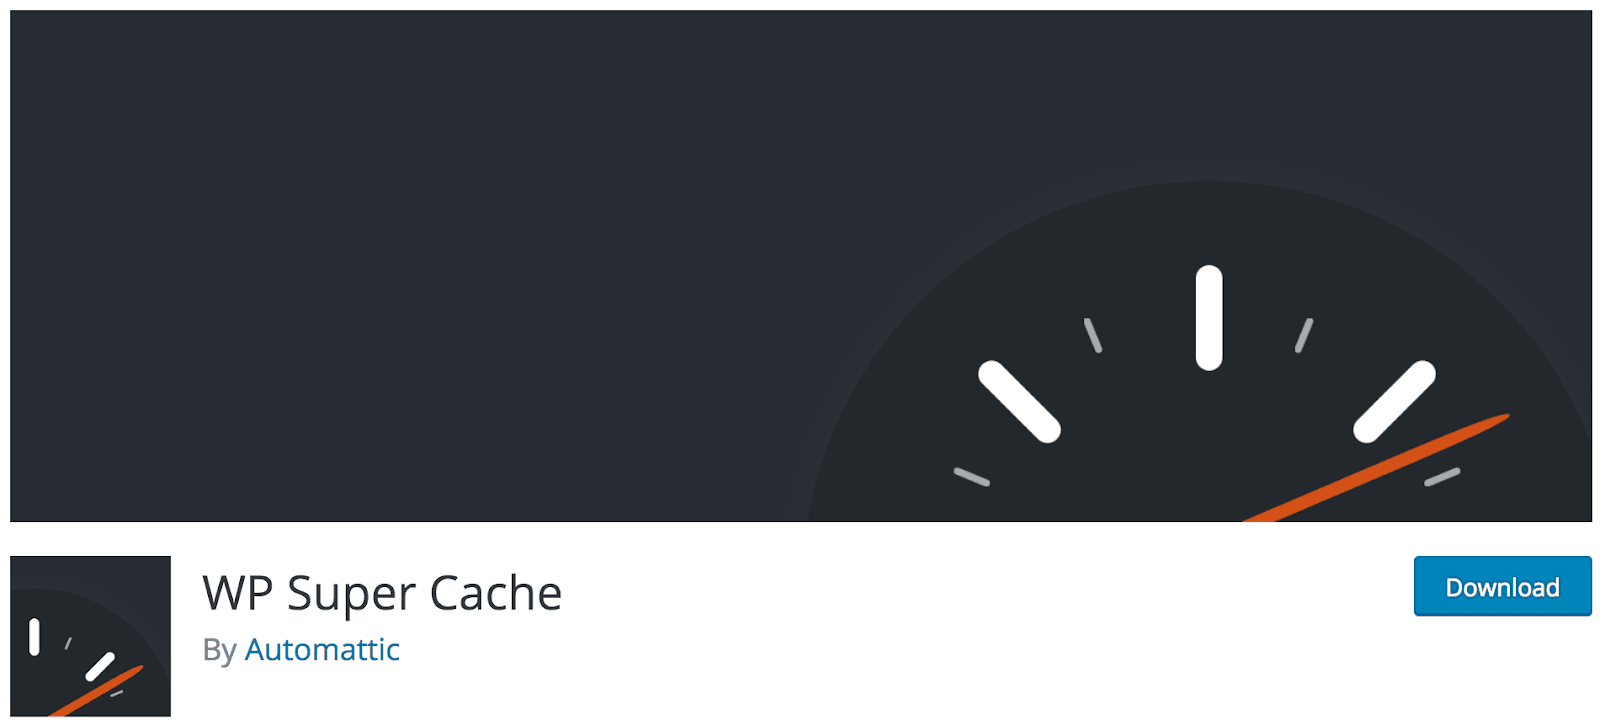 Чтобы сократить время загрузки, вы можете рассмотреть возможность использования плагина кэширования, такого как   WP Super Cache   :